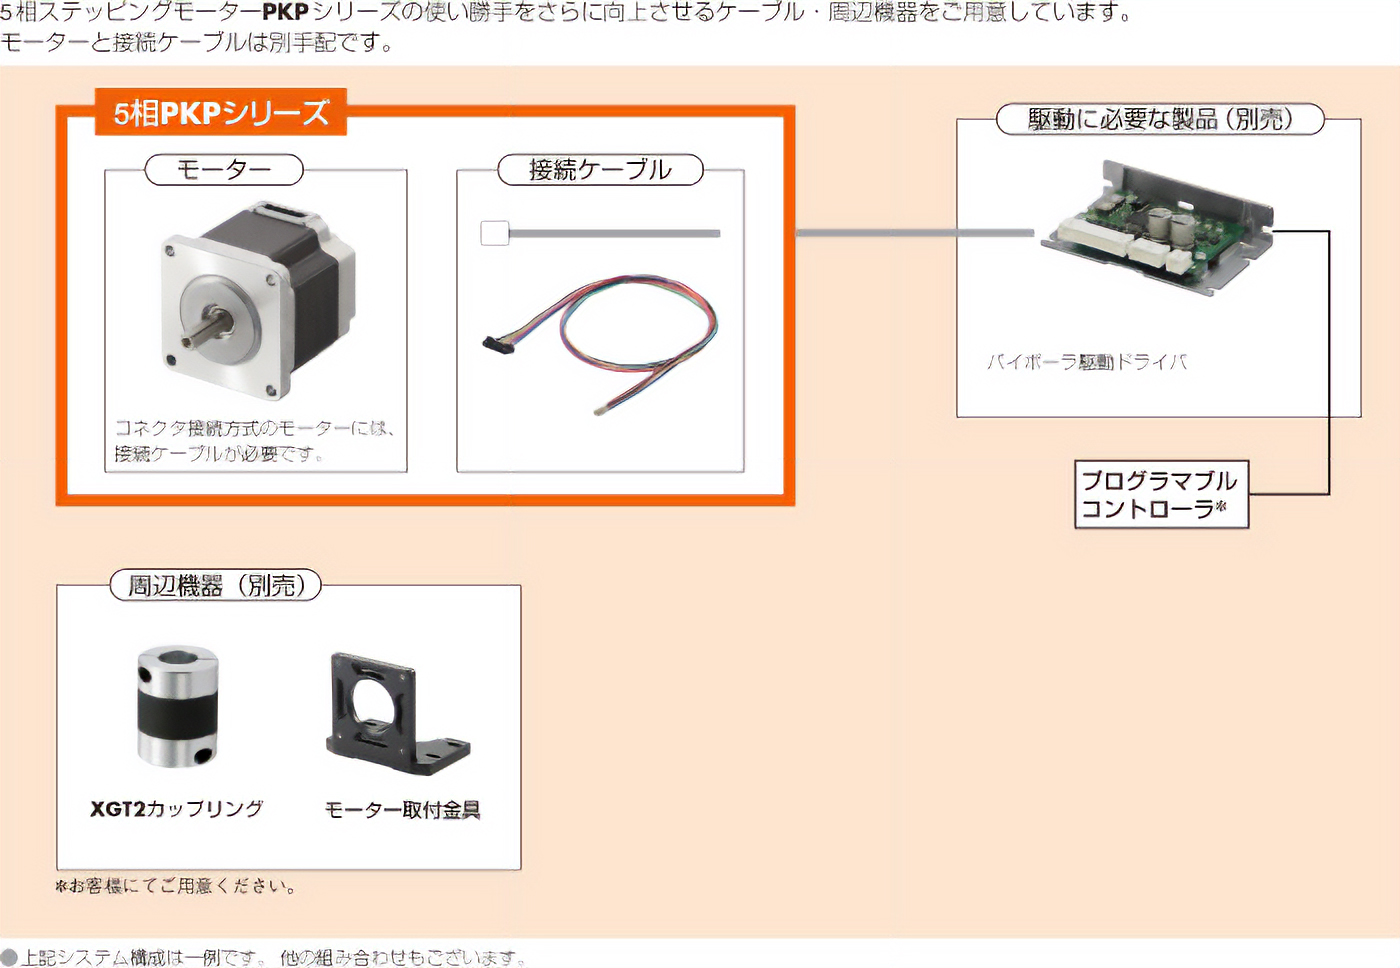 5相ステッピングモーター PKP／PKシリーズ システム構成